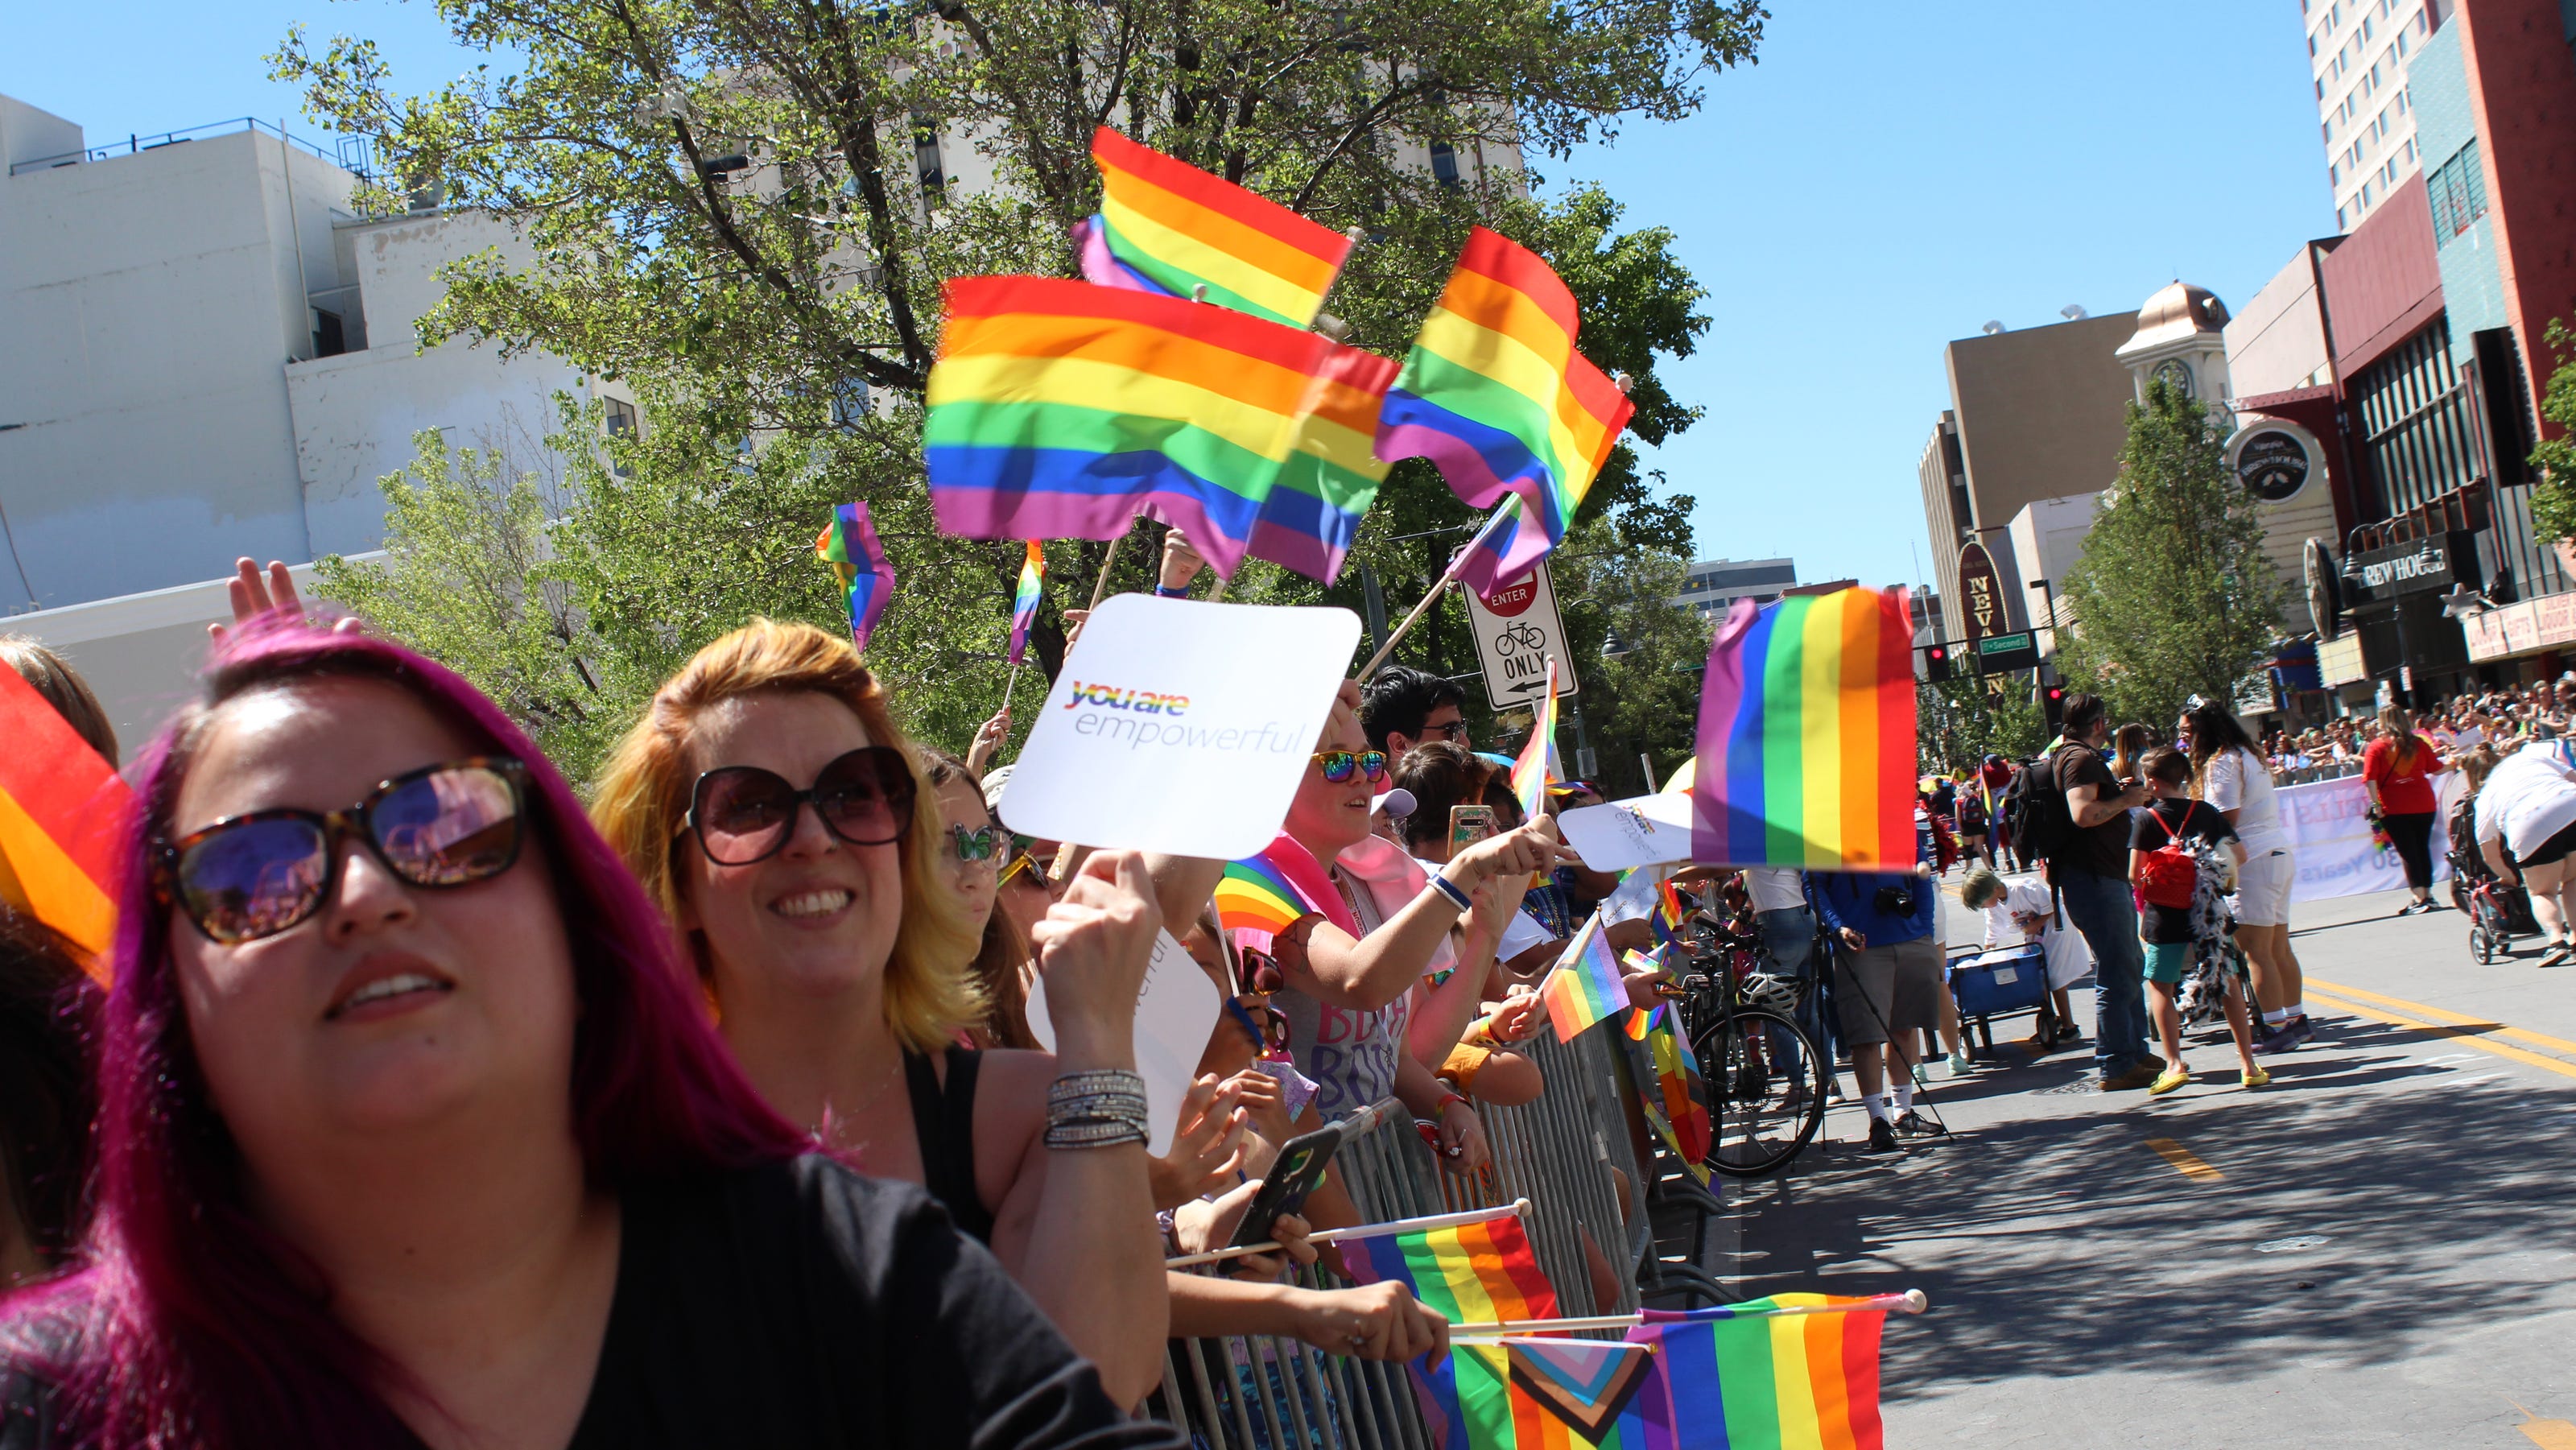 Reno celebrates LGBTQ+ Pride amid national political turmoil